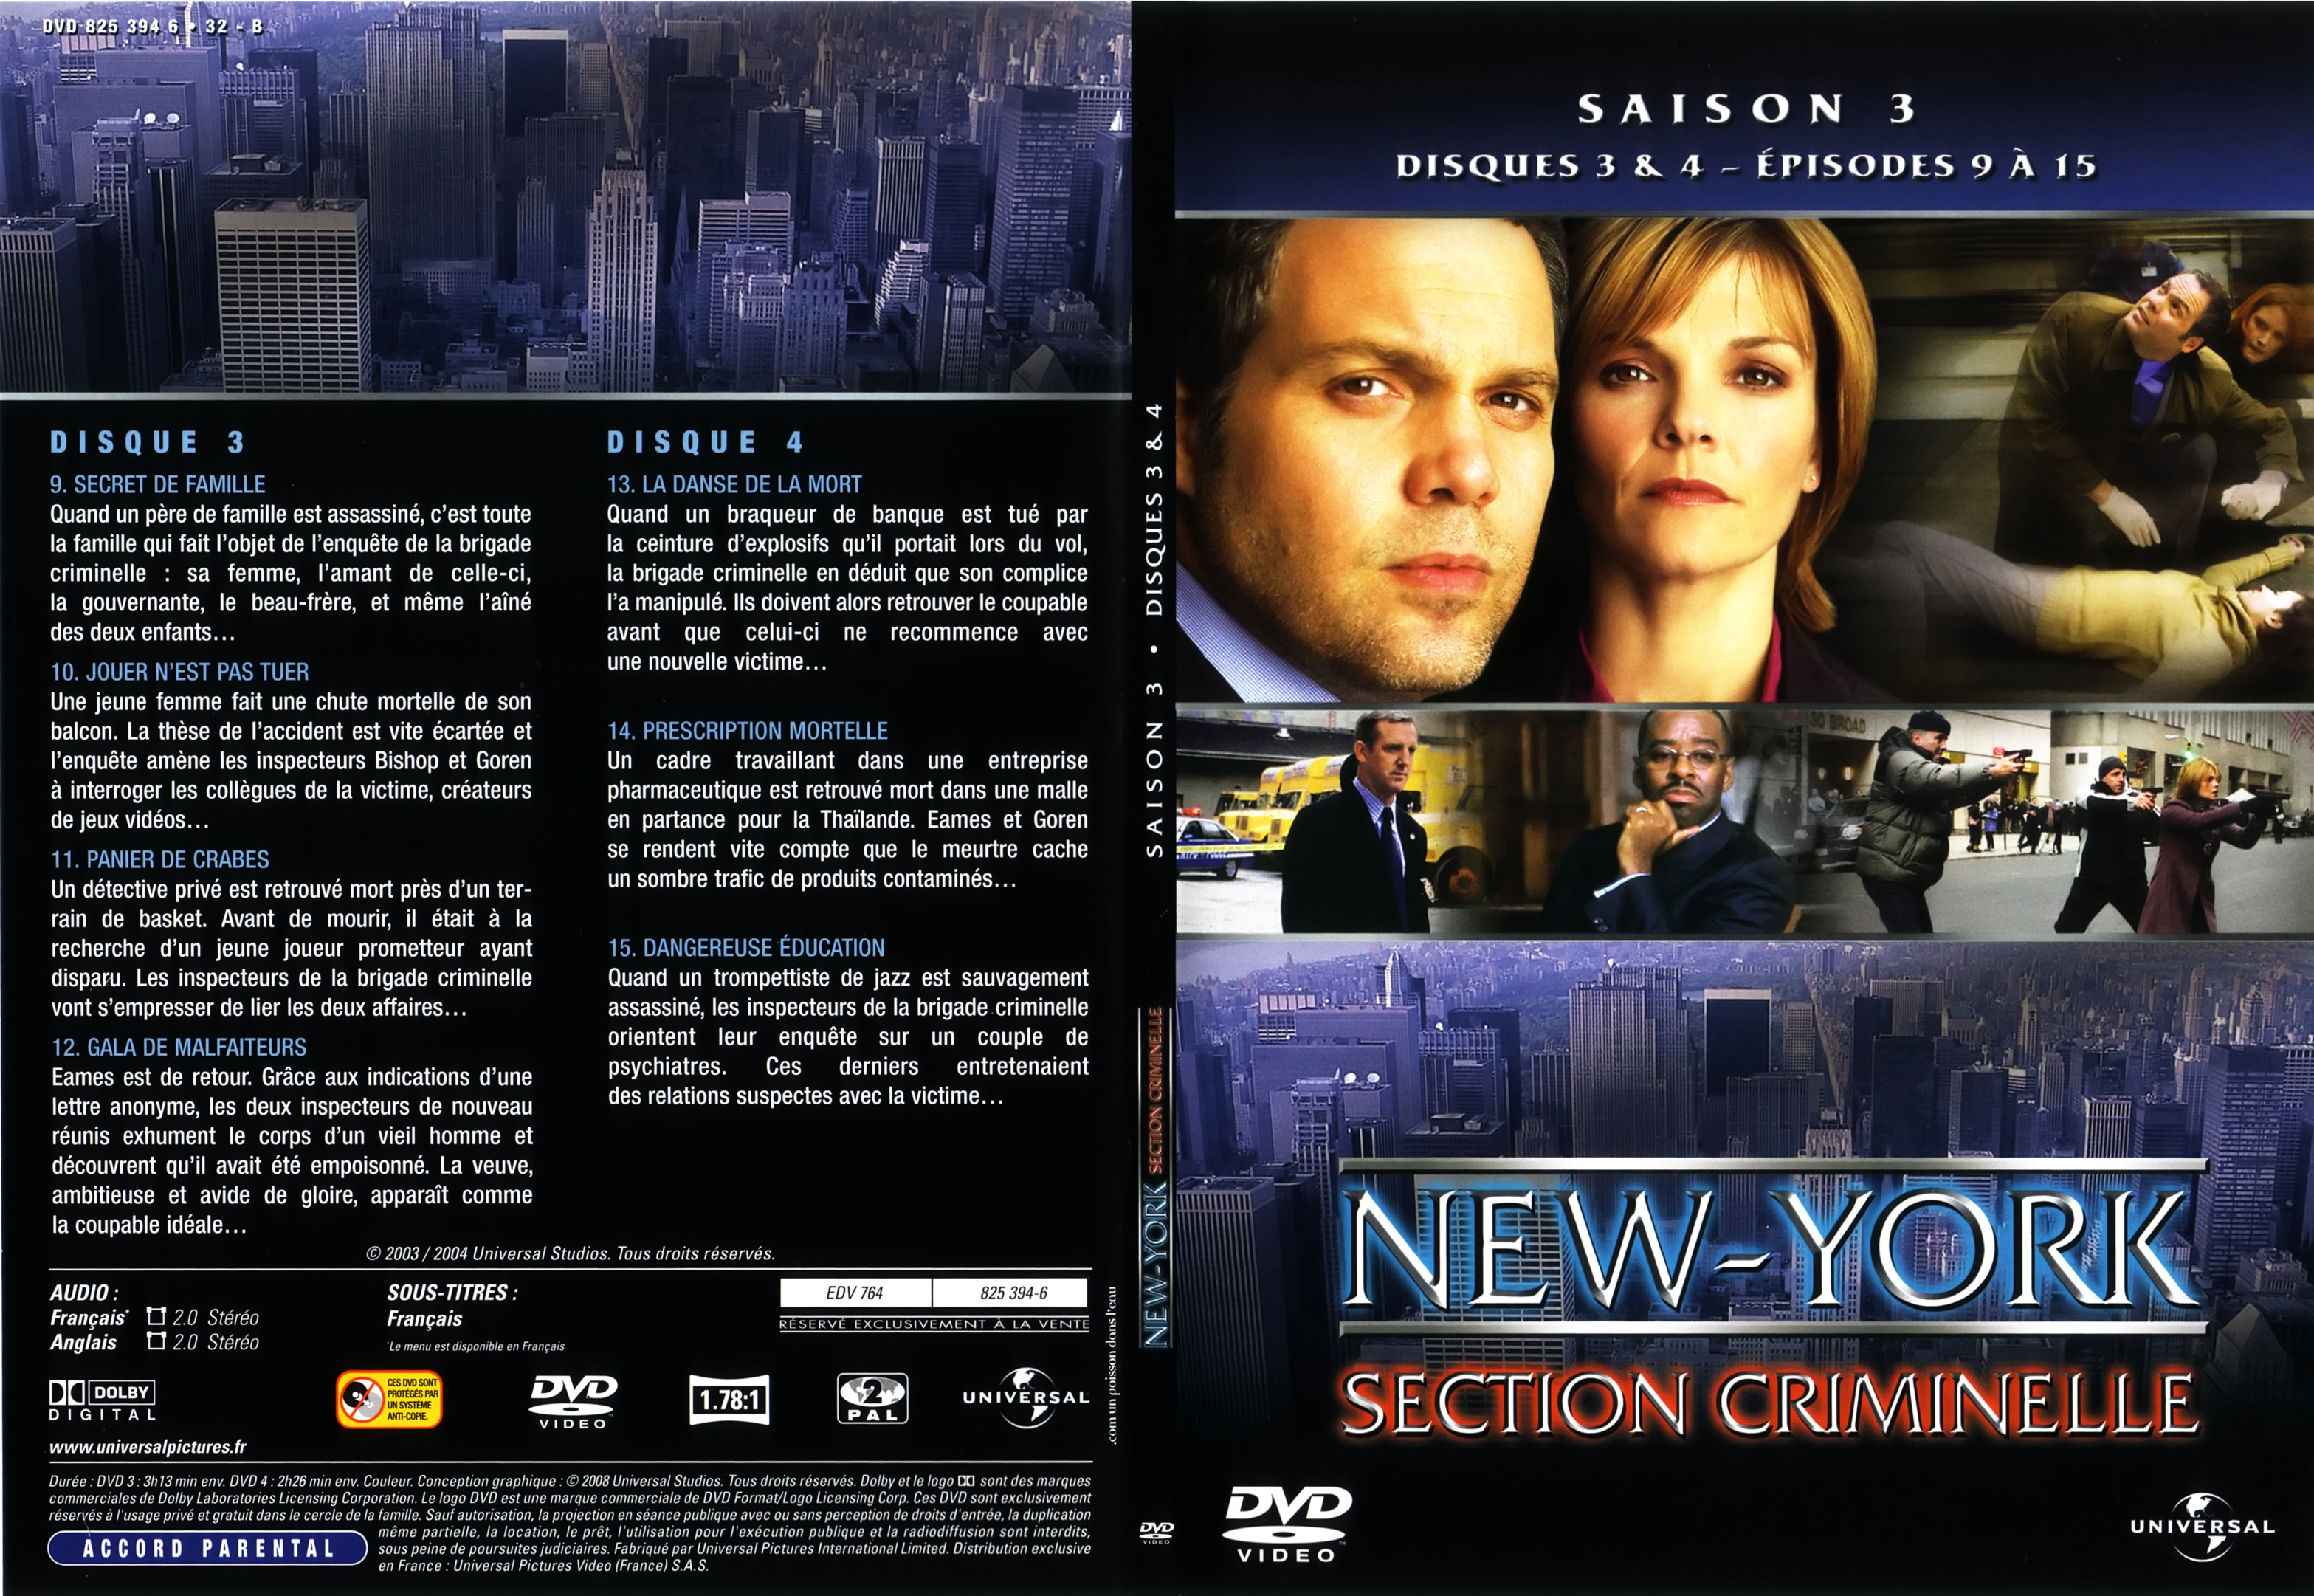 Jaquette DVD New York section criminelle saison 3 DVD 2